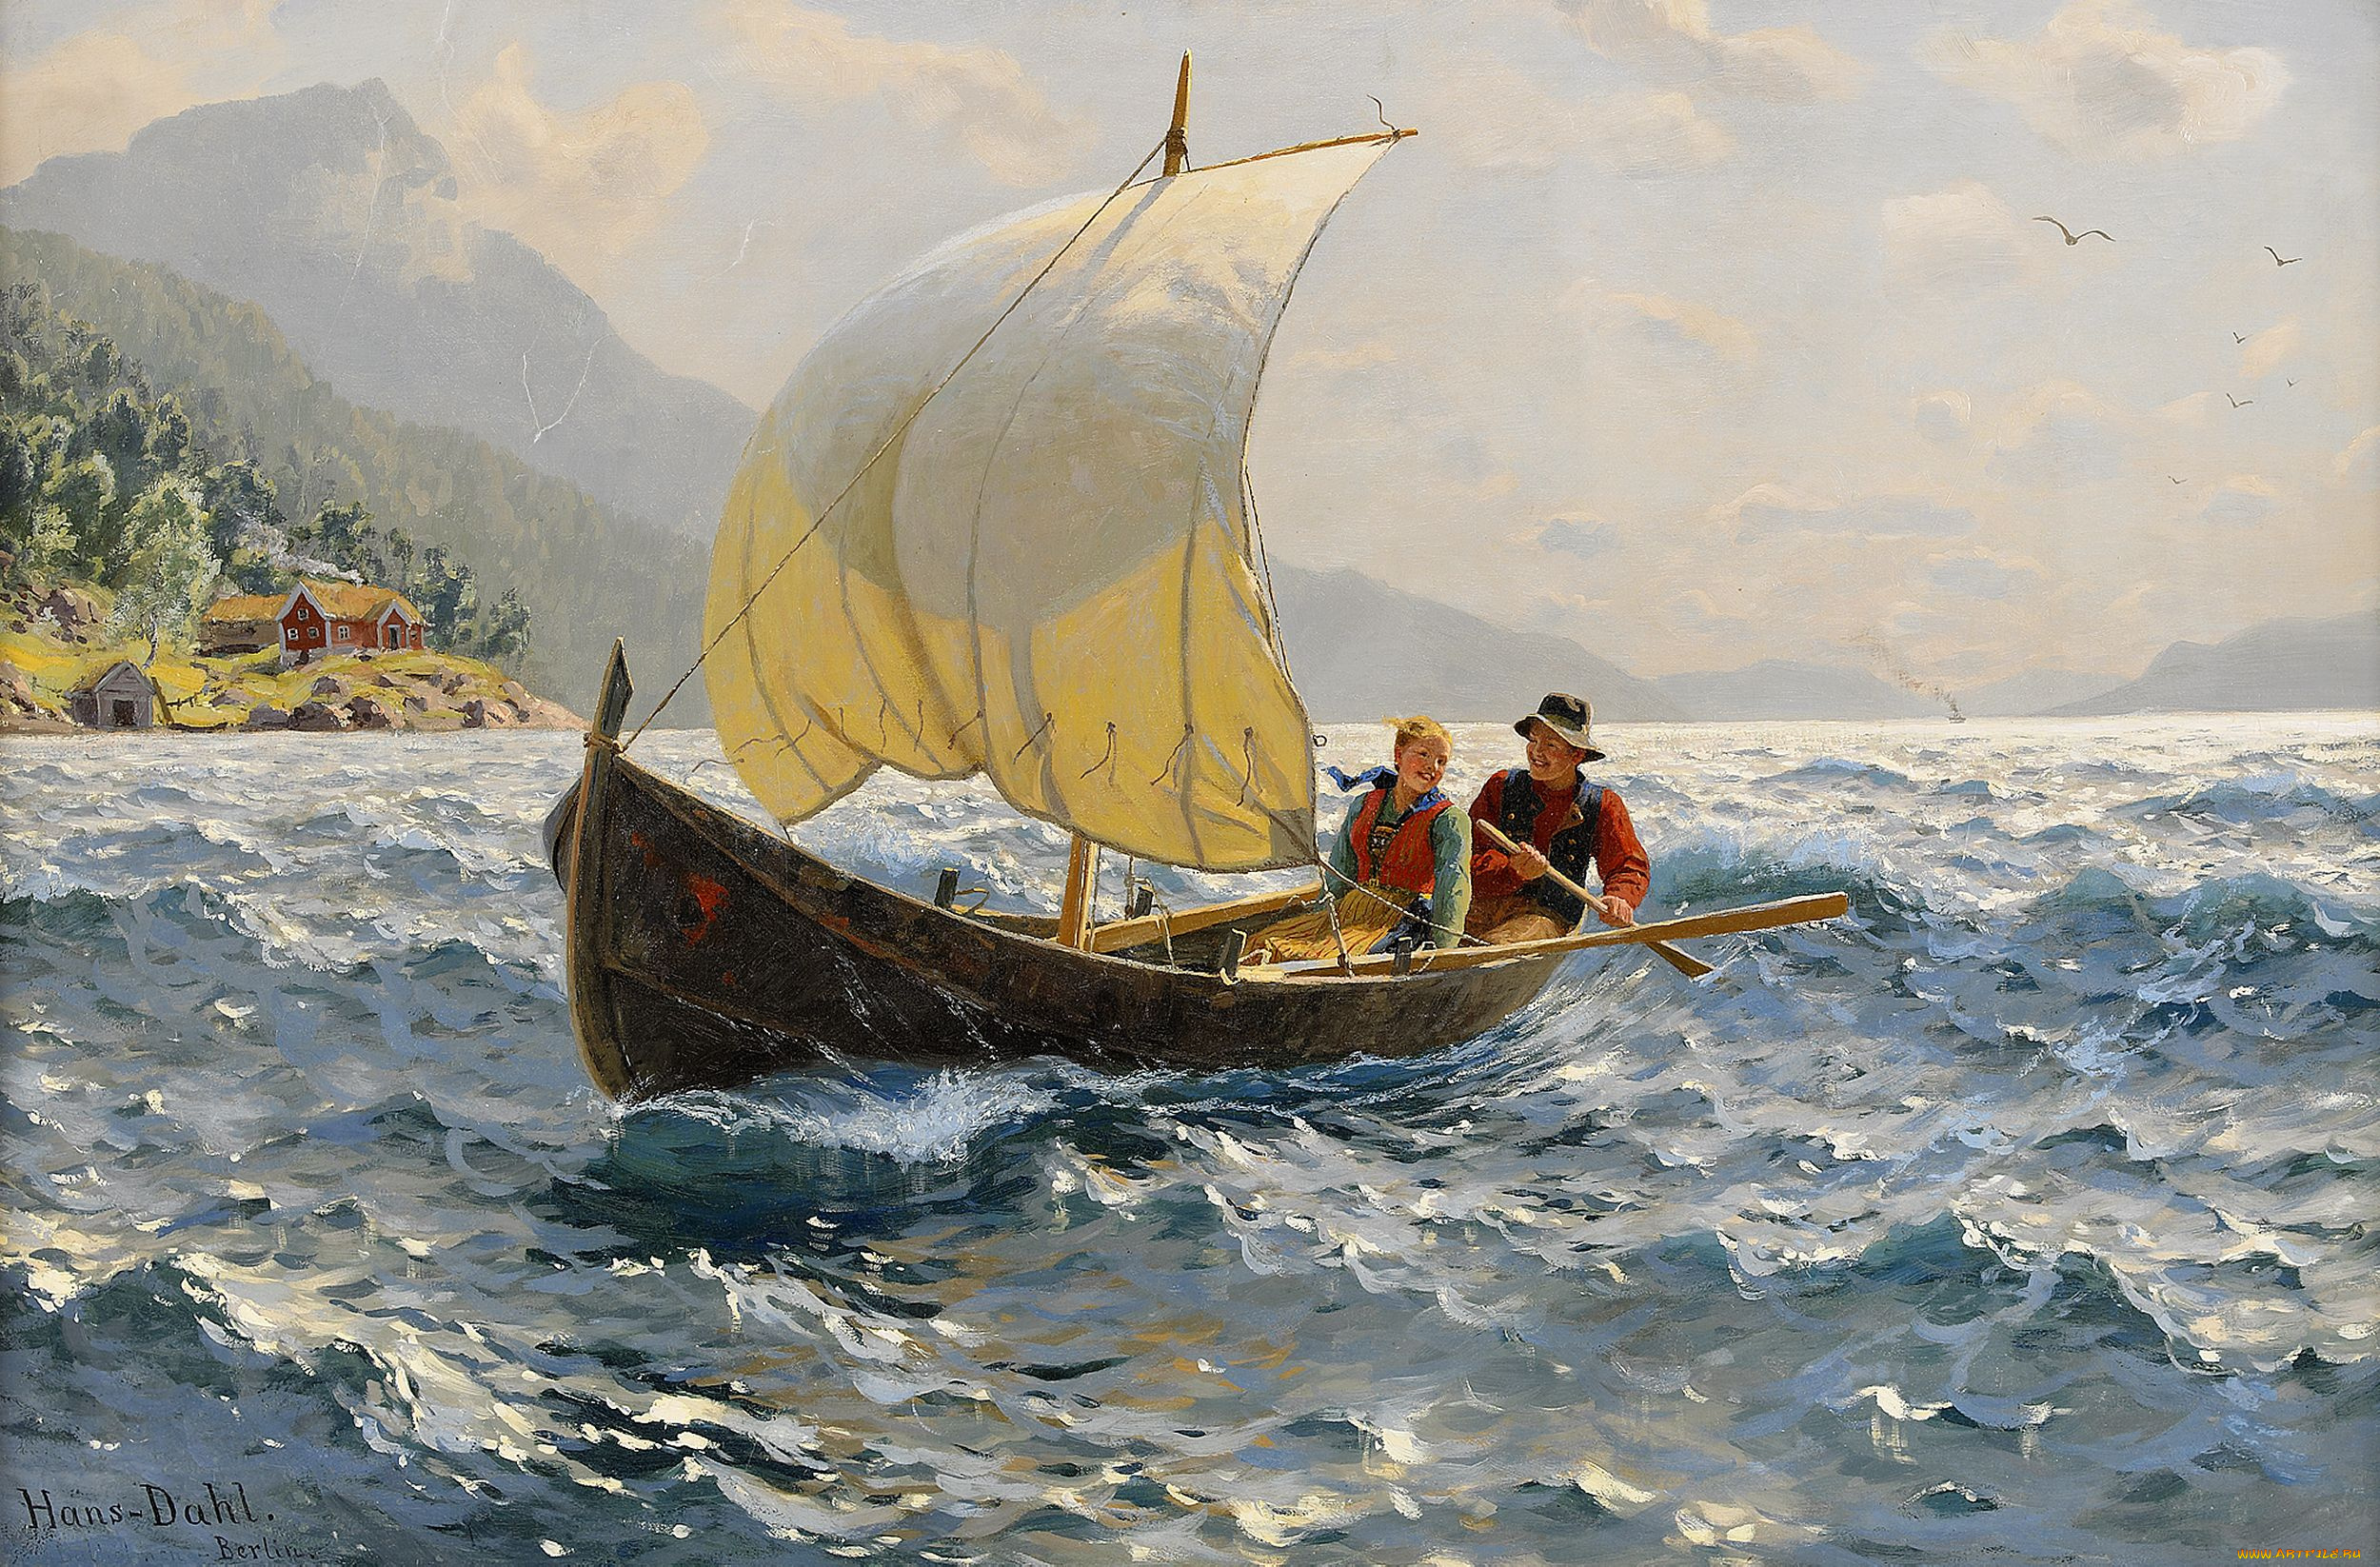 Сани с парусом. Ханс даль норвежский художник. Ханс даль художник маринист. Норвежский живописец Ханс даль (1849-1937). Hans Dahl лодка.